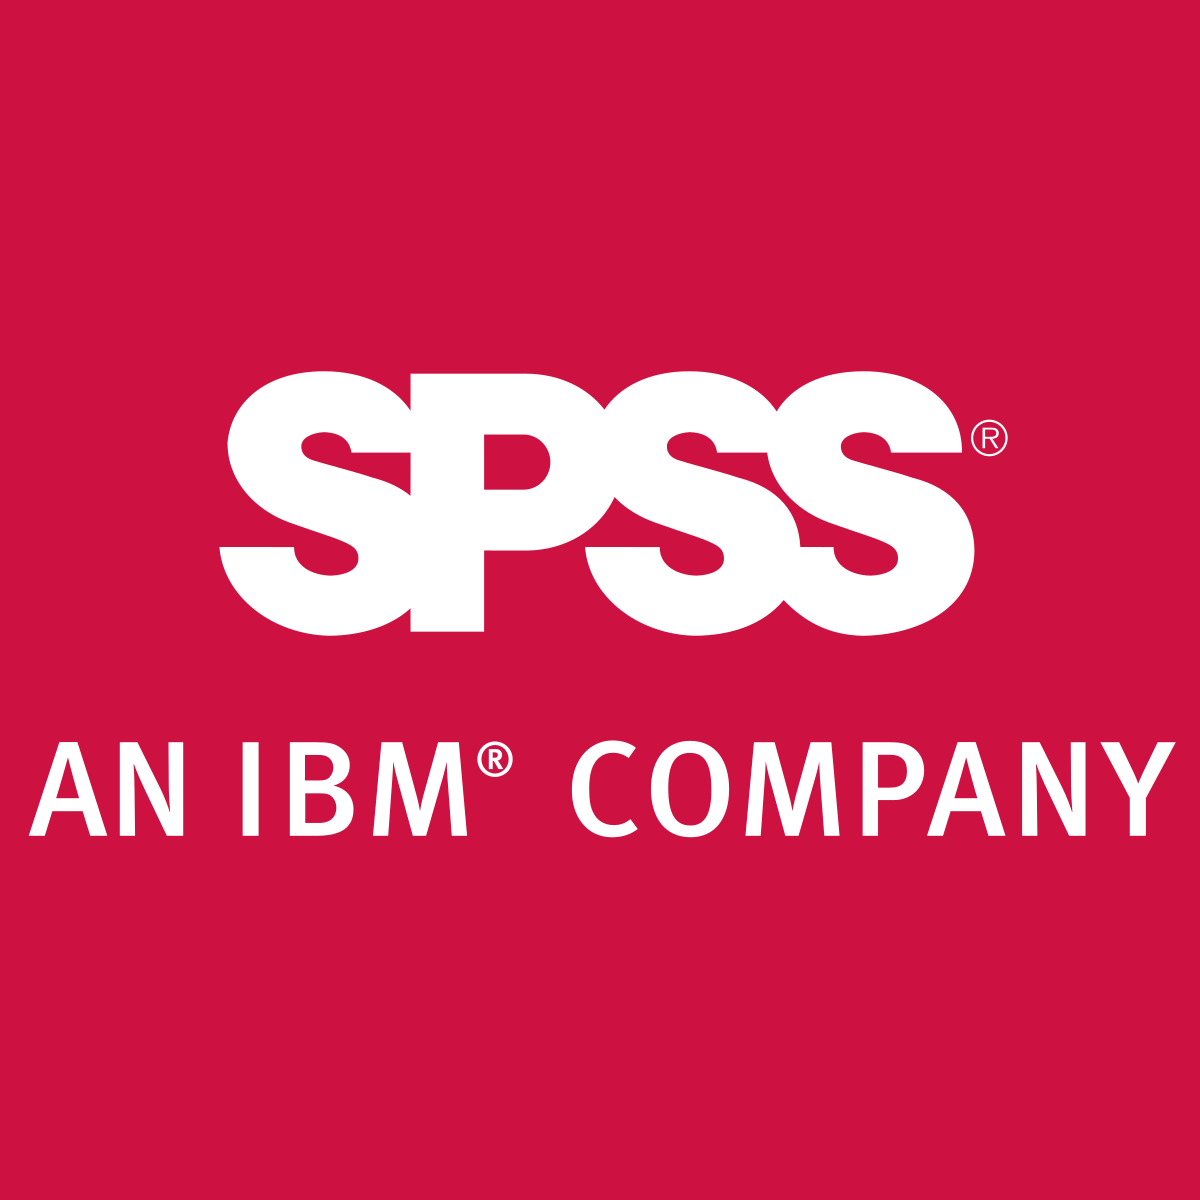 SPSS - Wikipedia